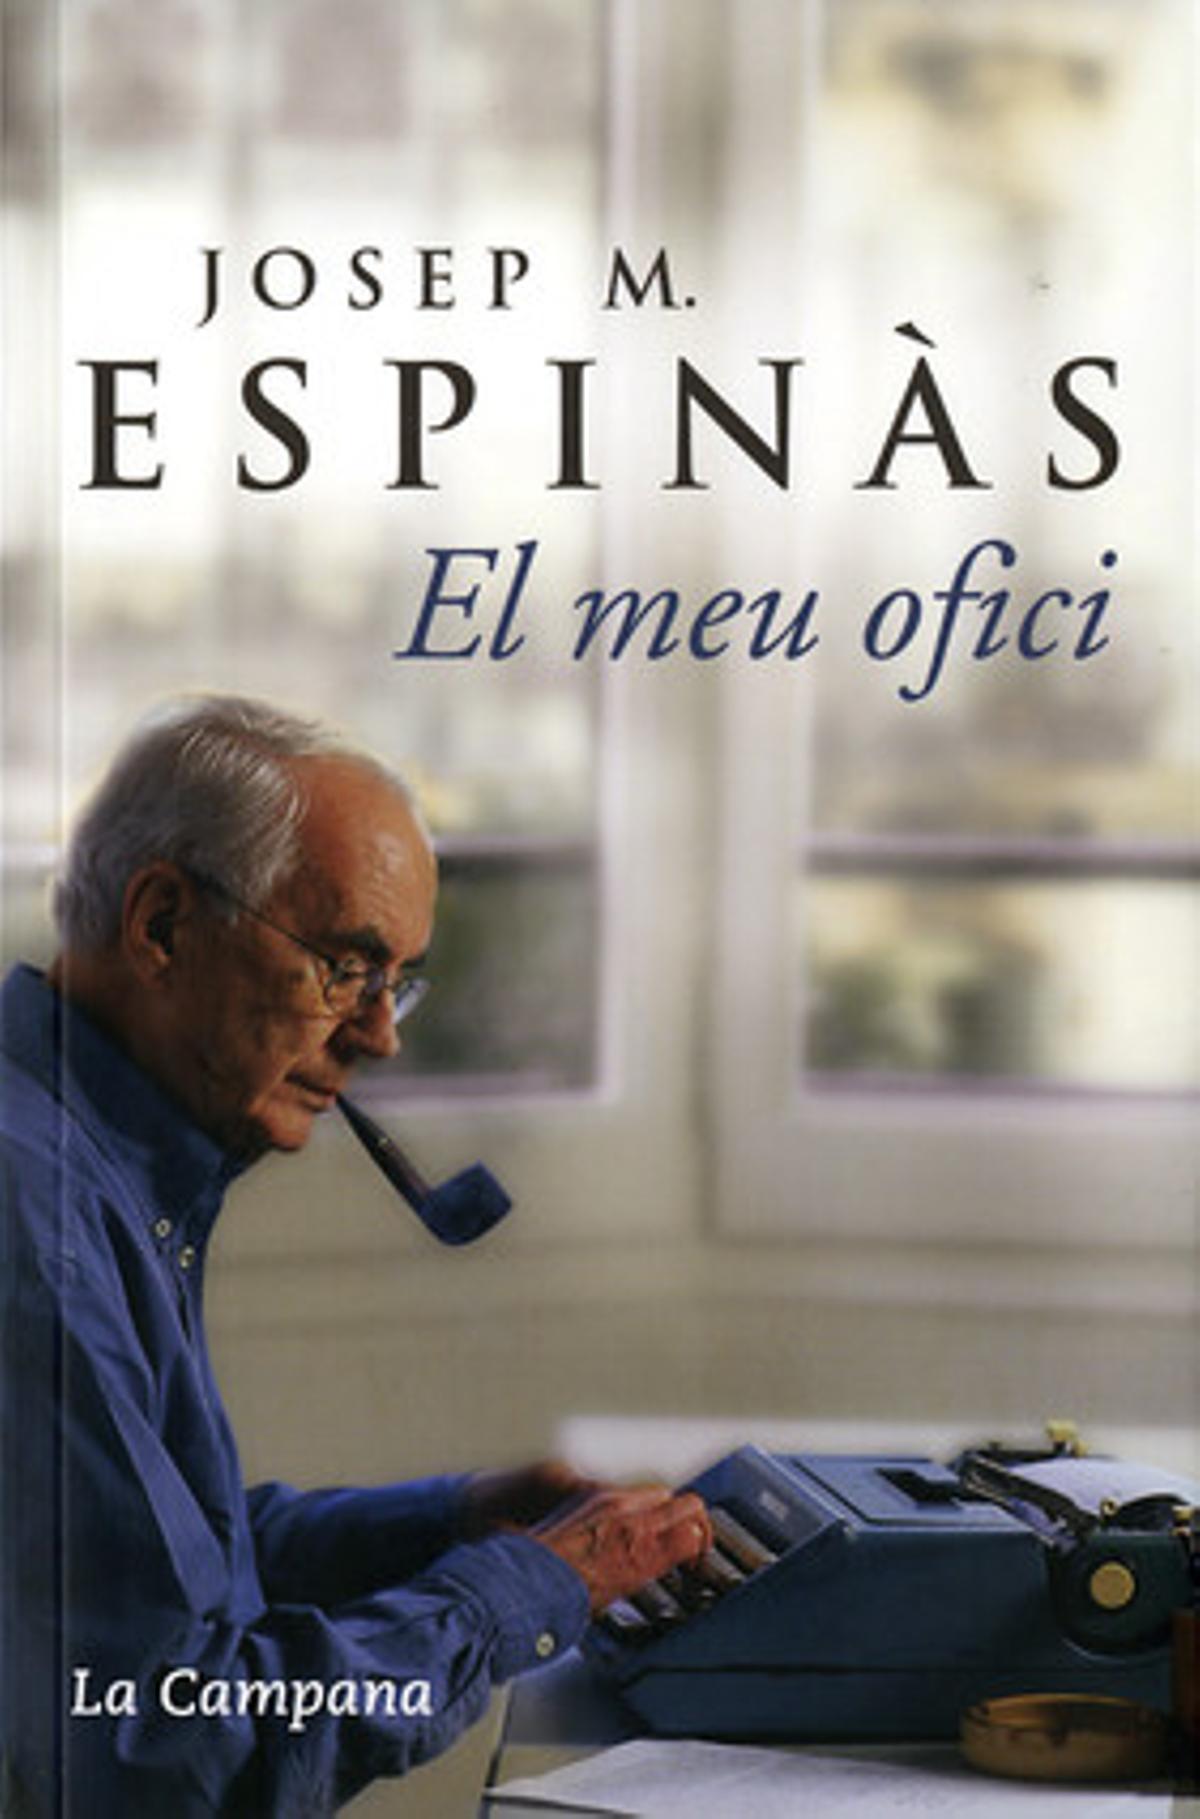 Portada del libro ’El meu ofici’ de Josep Maria Espinàs.